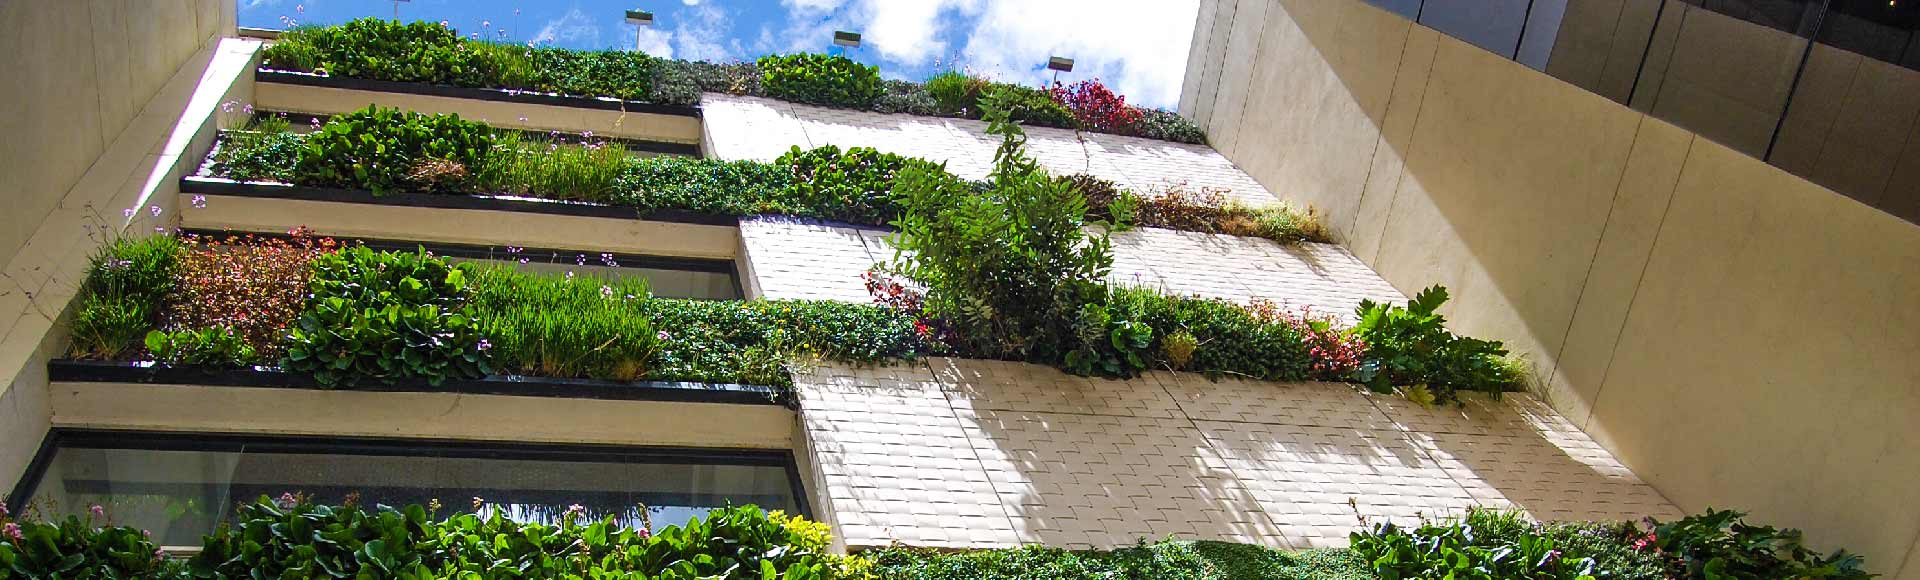 jardines verticales edificio connecta colombia